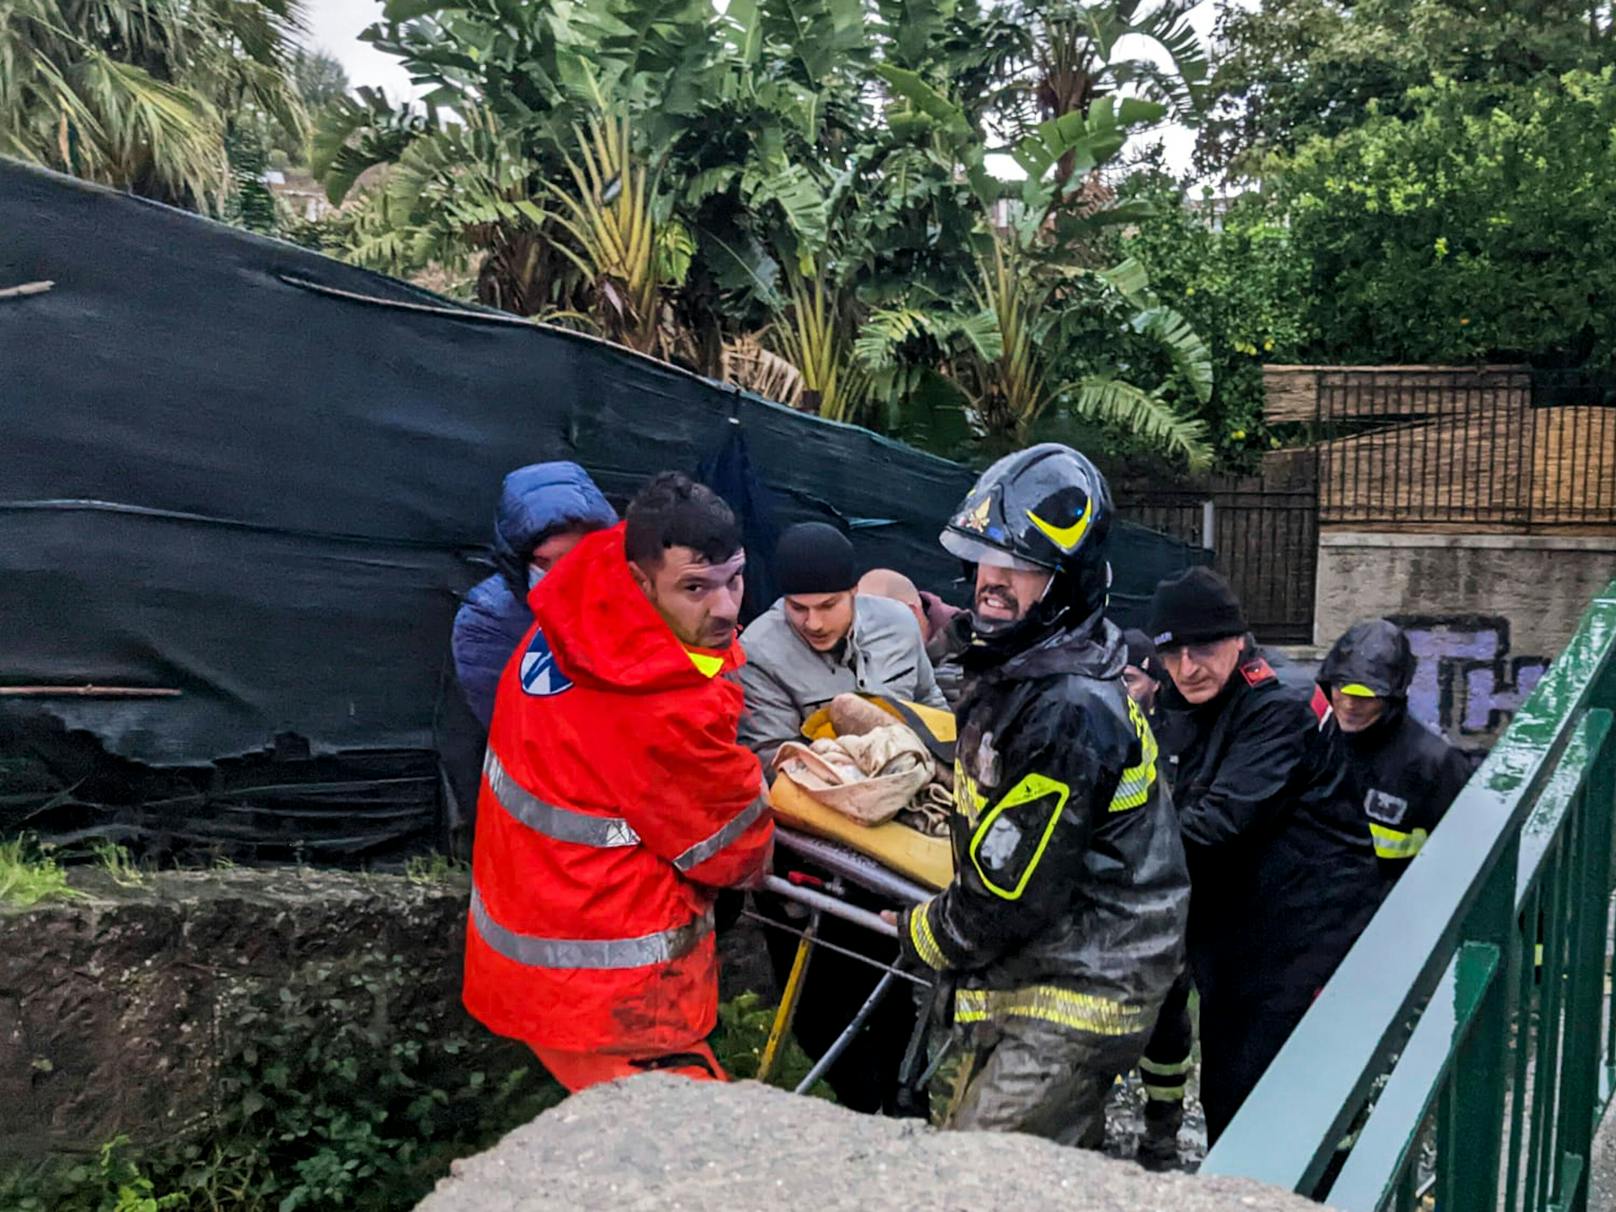 Naturkatastrophe in Italien: Noch mehr Tote geborgen